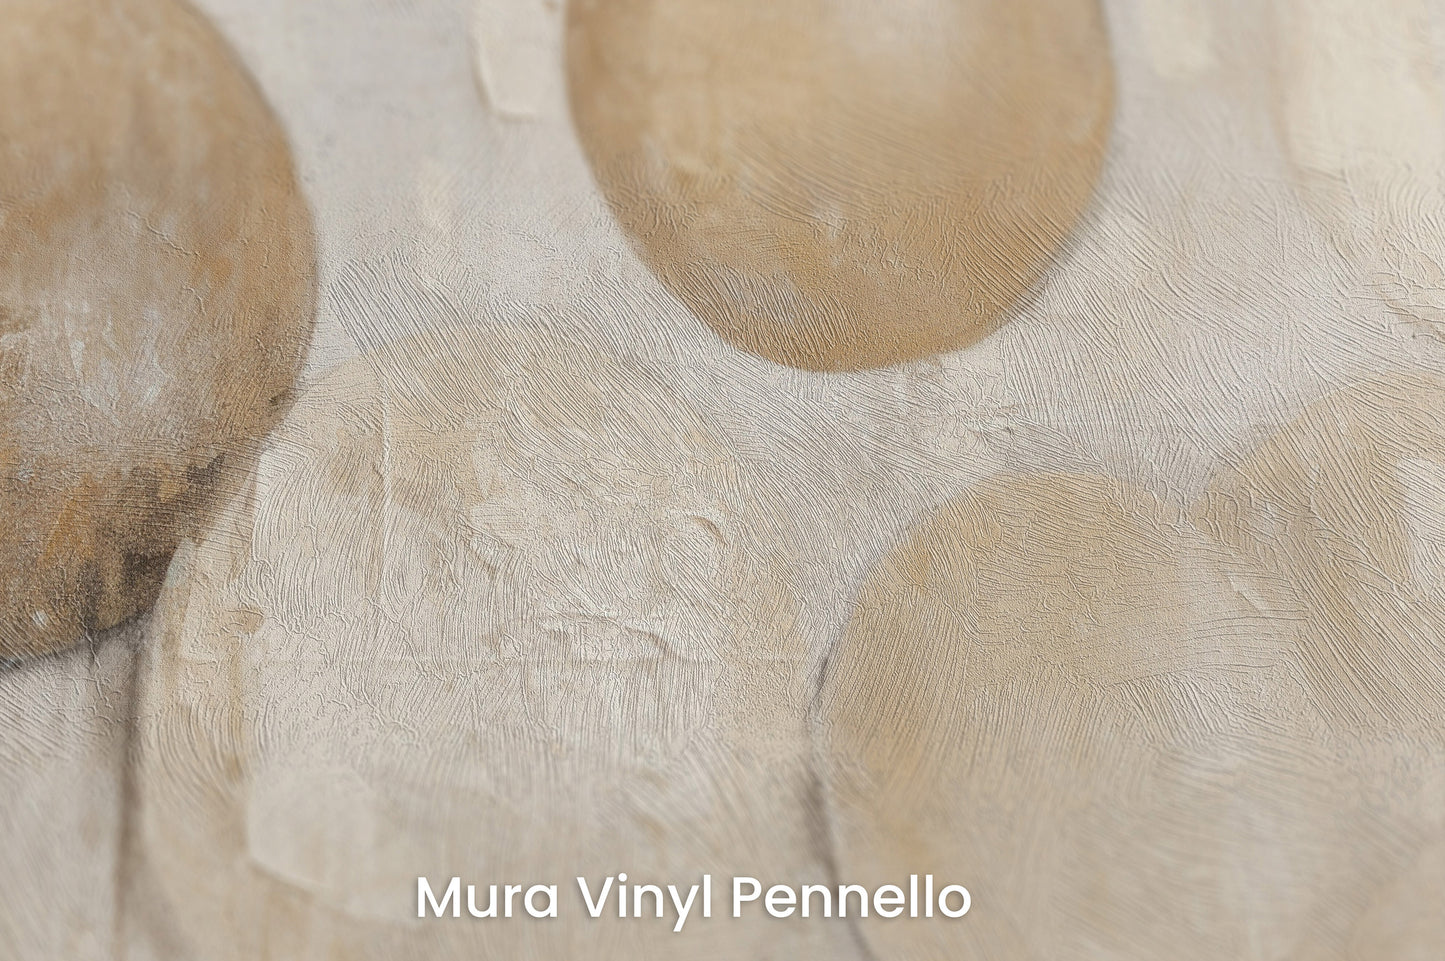 Zbliżenie na artystyczną fototapetę o nazwie ANTIQUE ORB RELIEF na podłożu Mura Vinyl Pennello - faktura pociągnięć pędzla malarskiego.